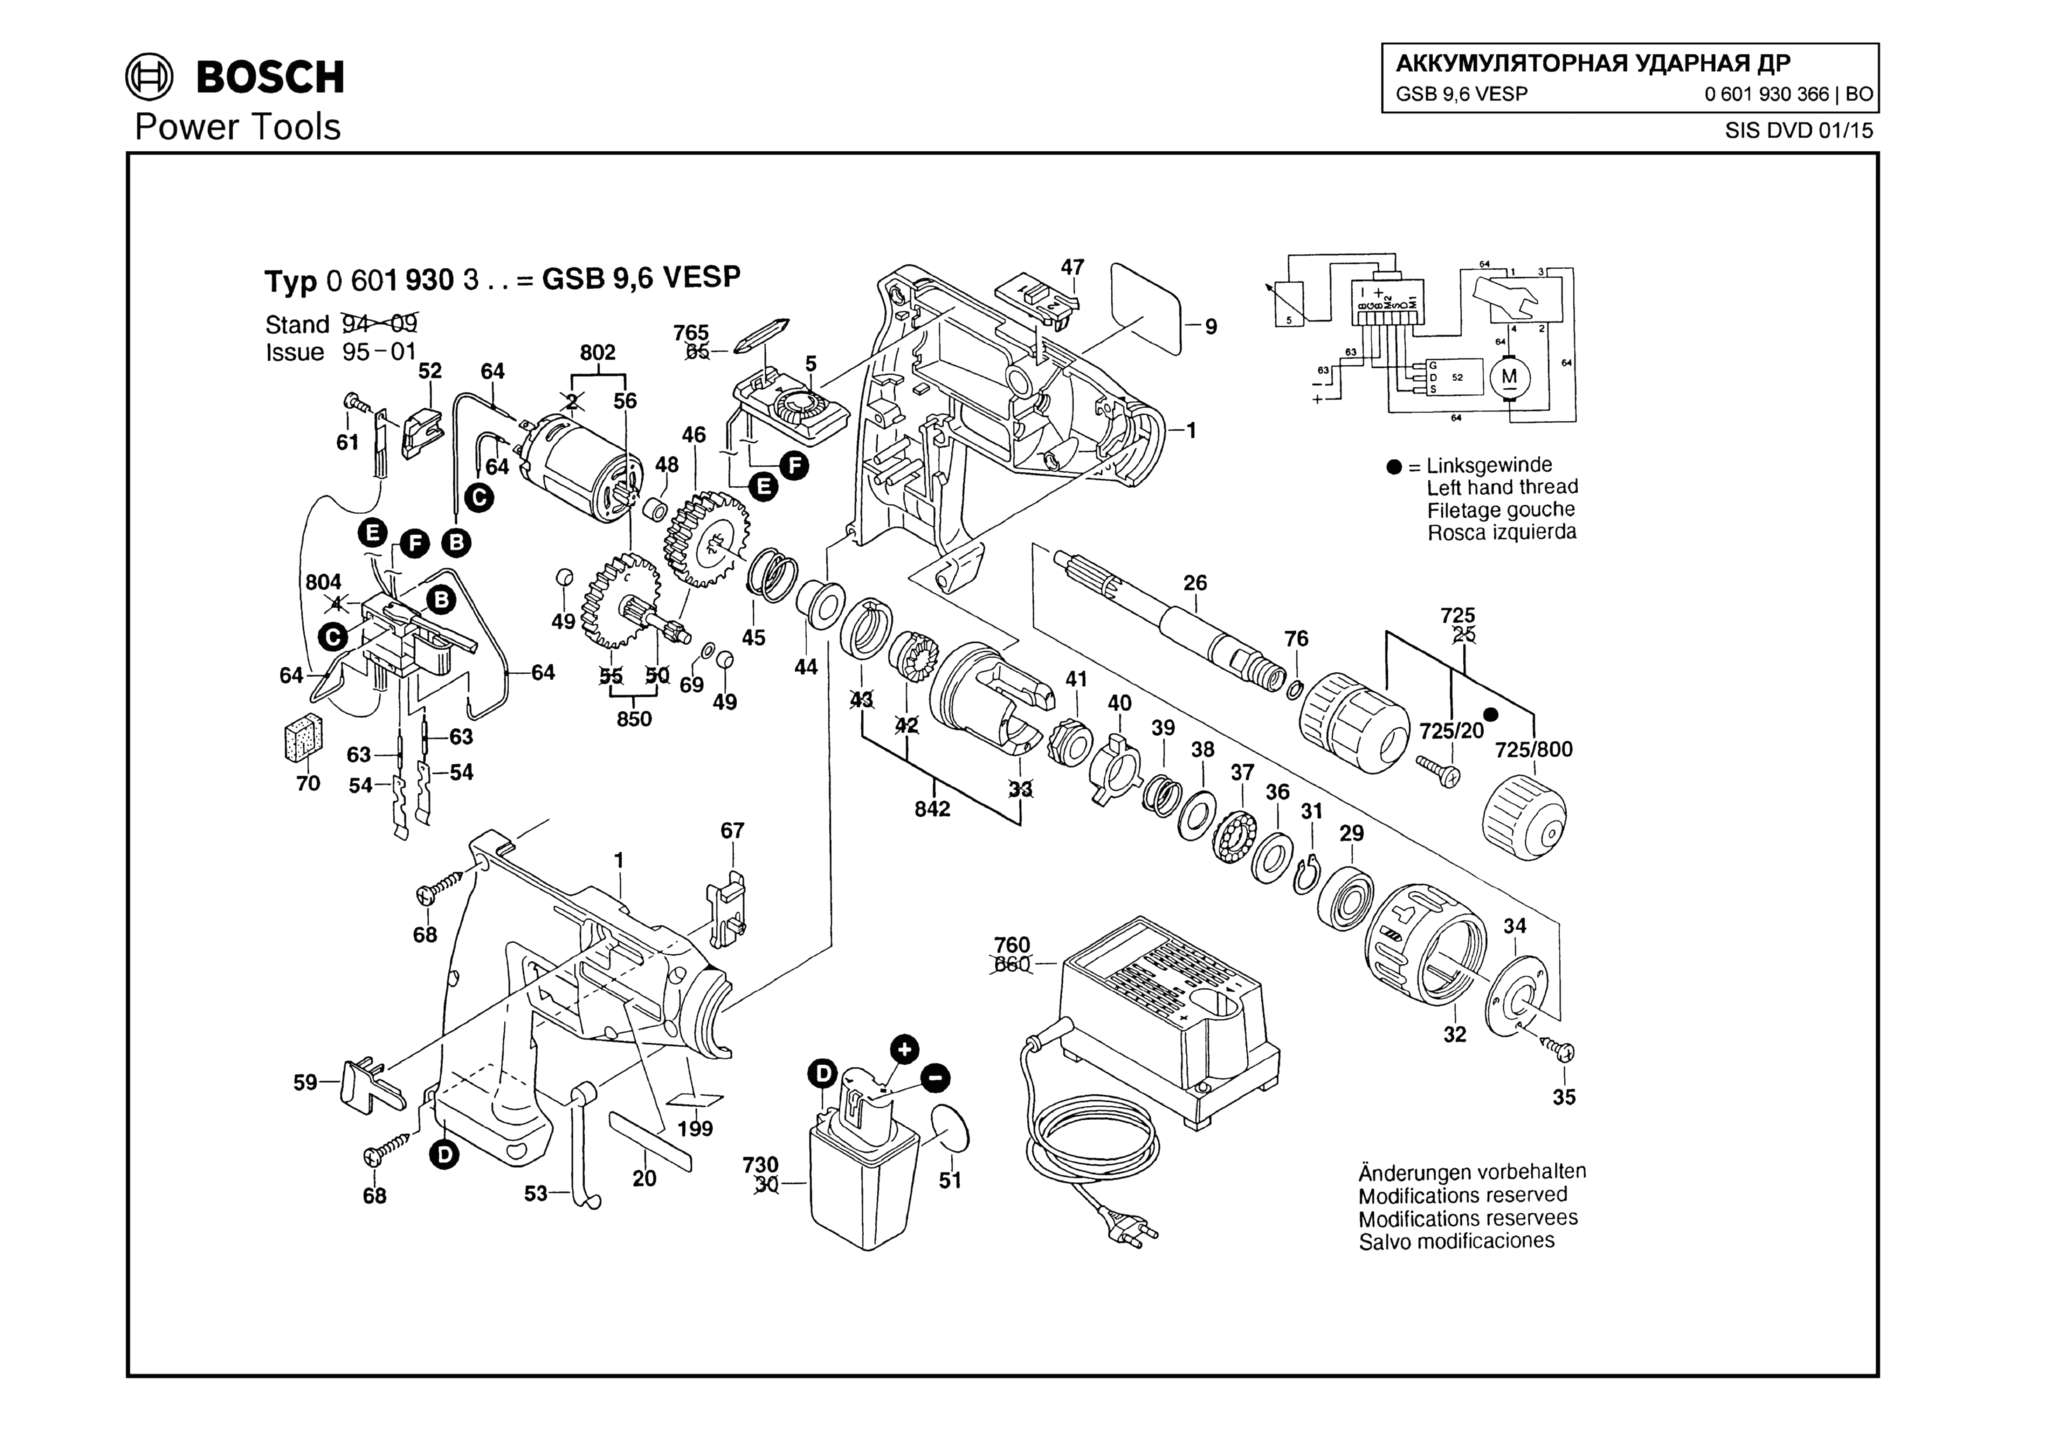 Запчасти, схема и деталировка Bosch GSB 9,6 VESP (ТИП 0601930366)